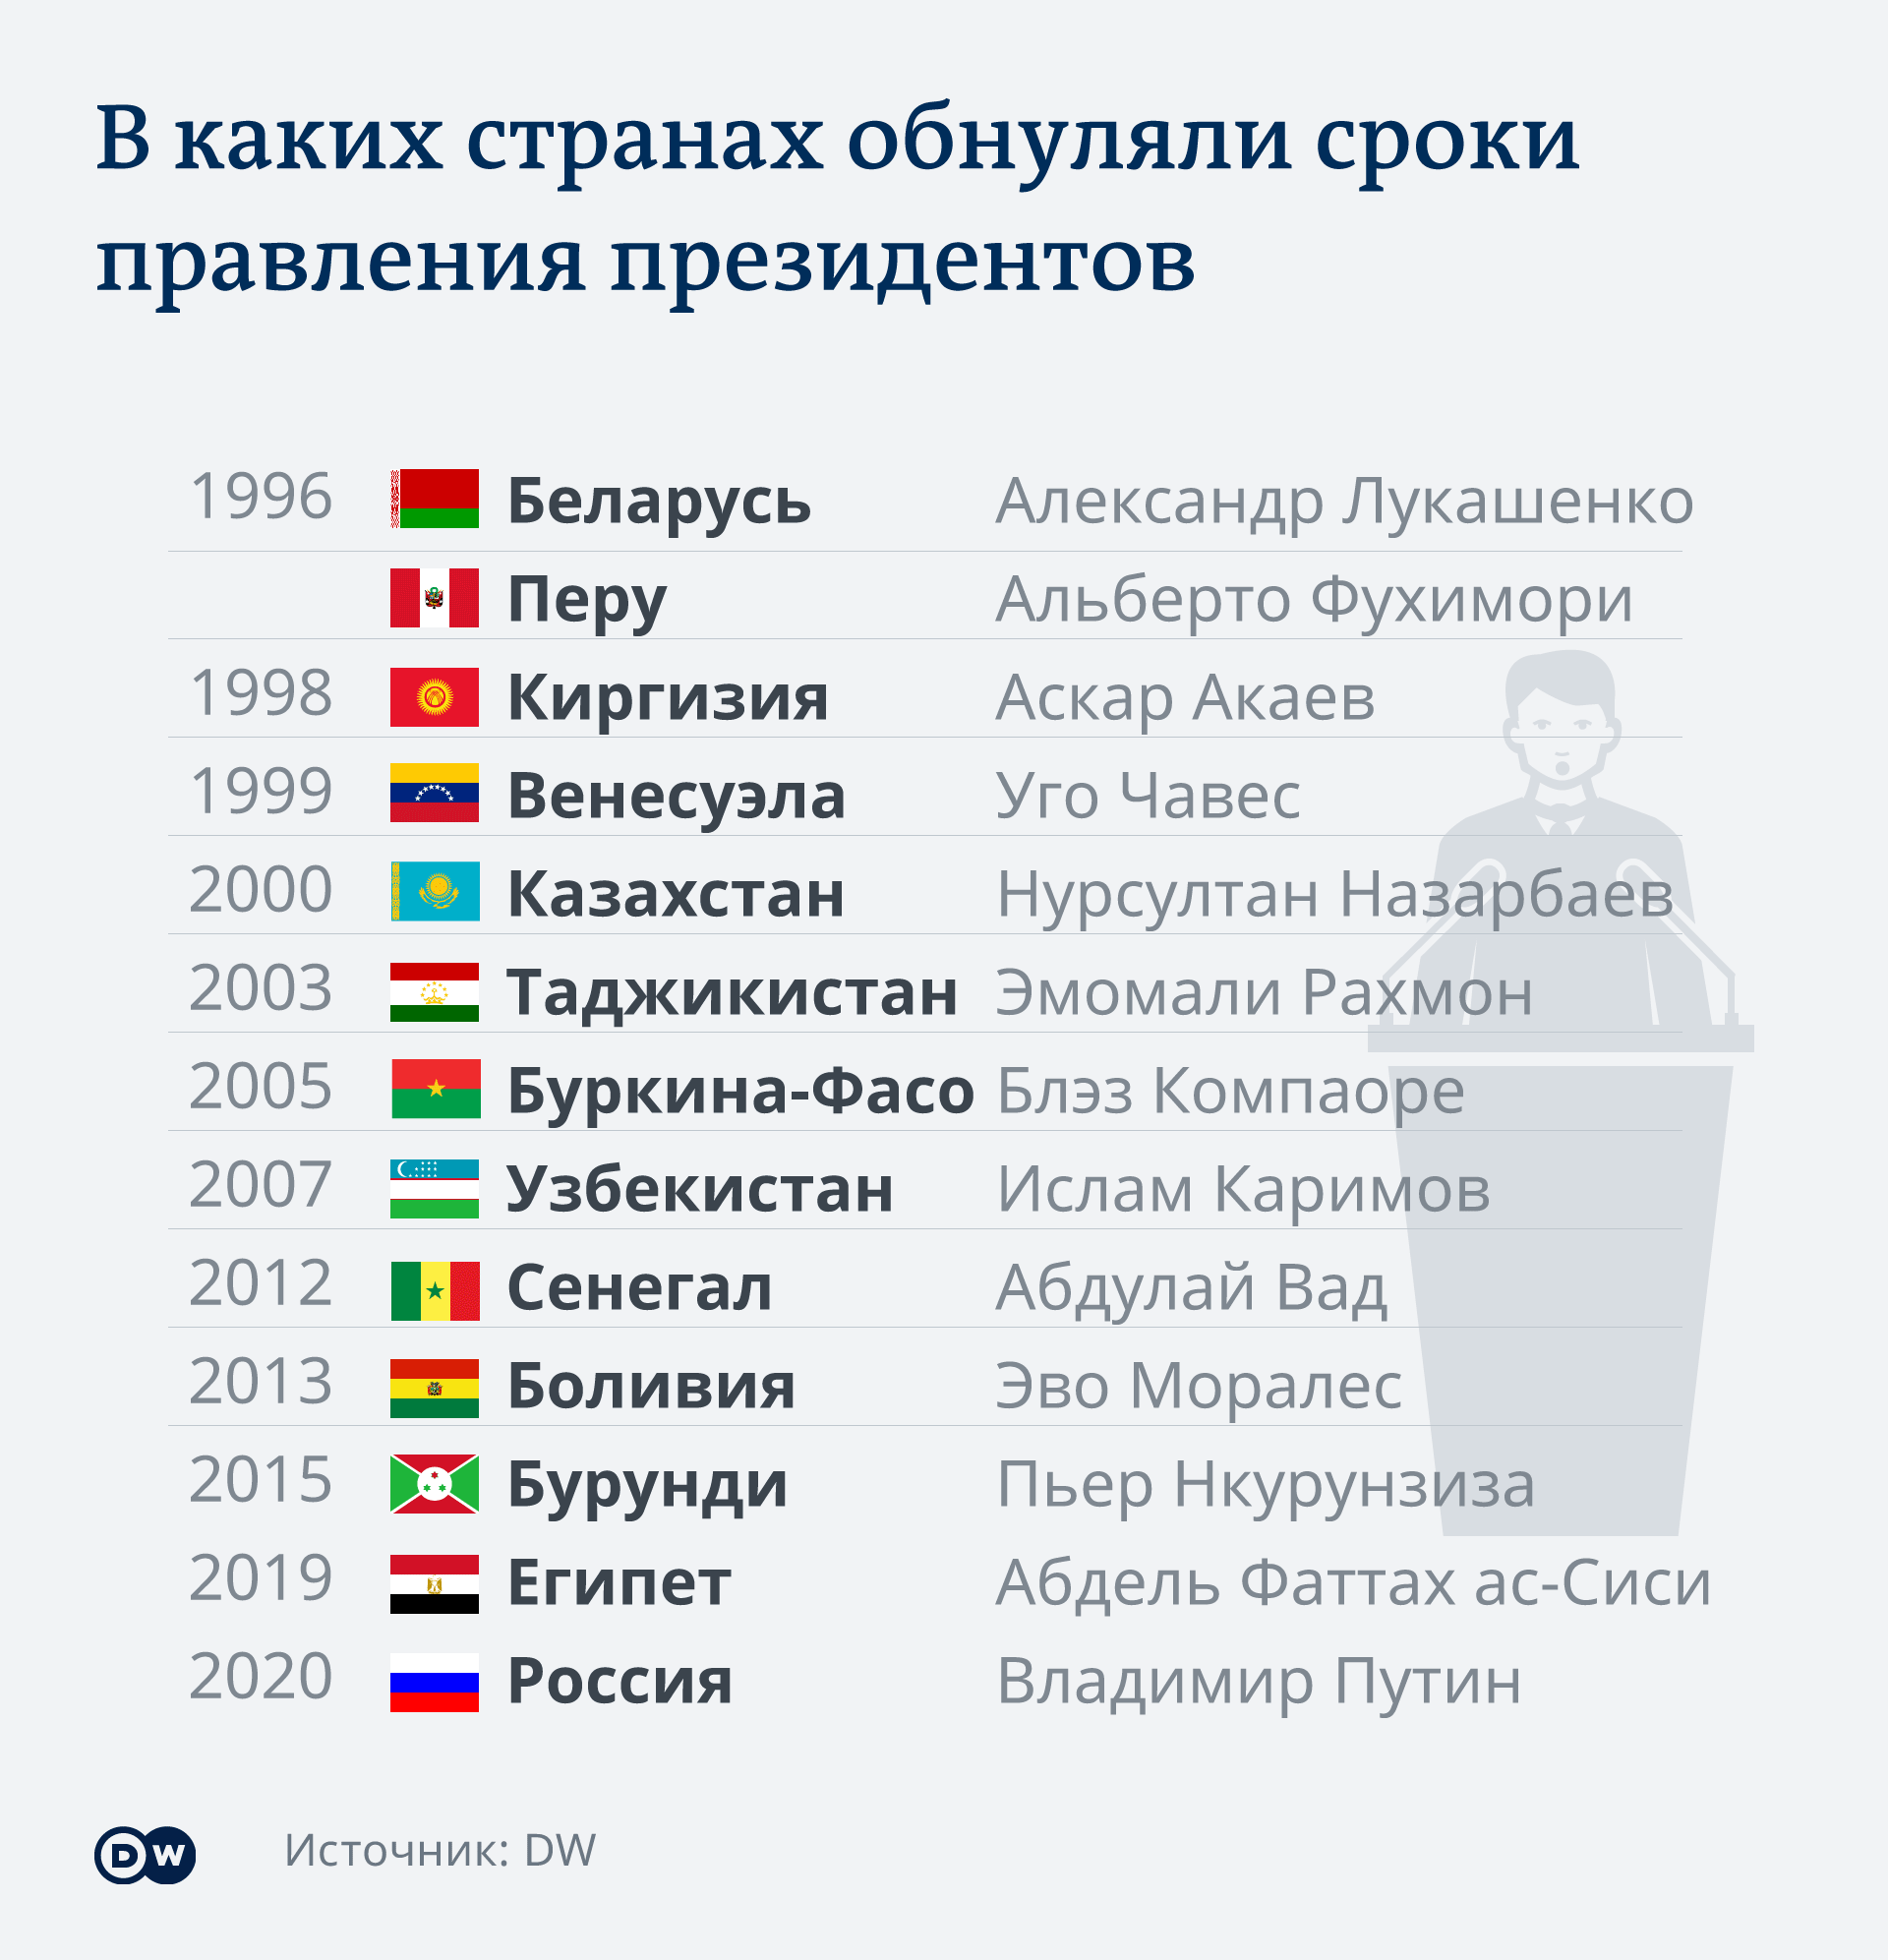 Инфографика В каких странах обнуляли сроки правления президентов